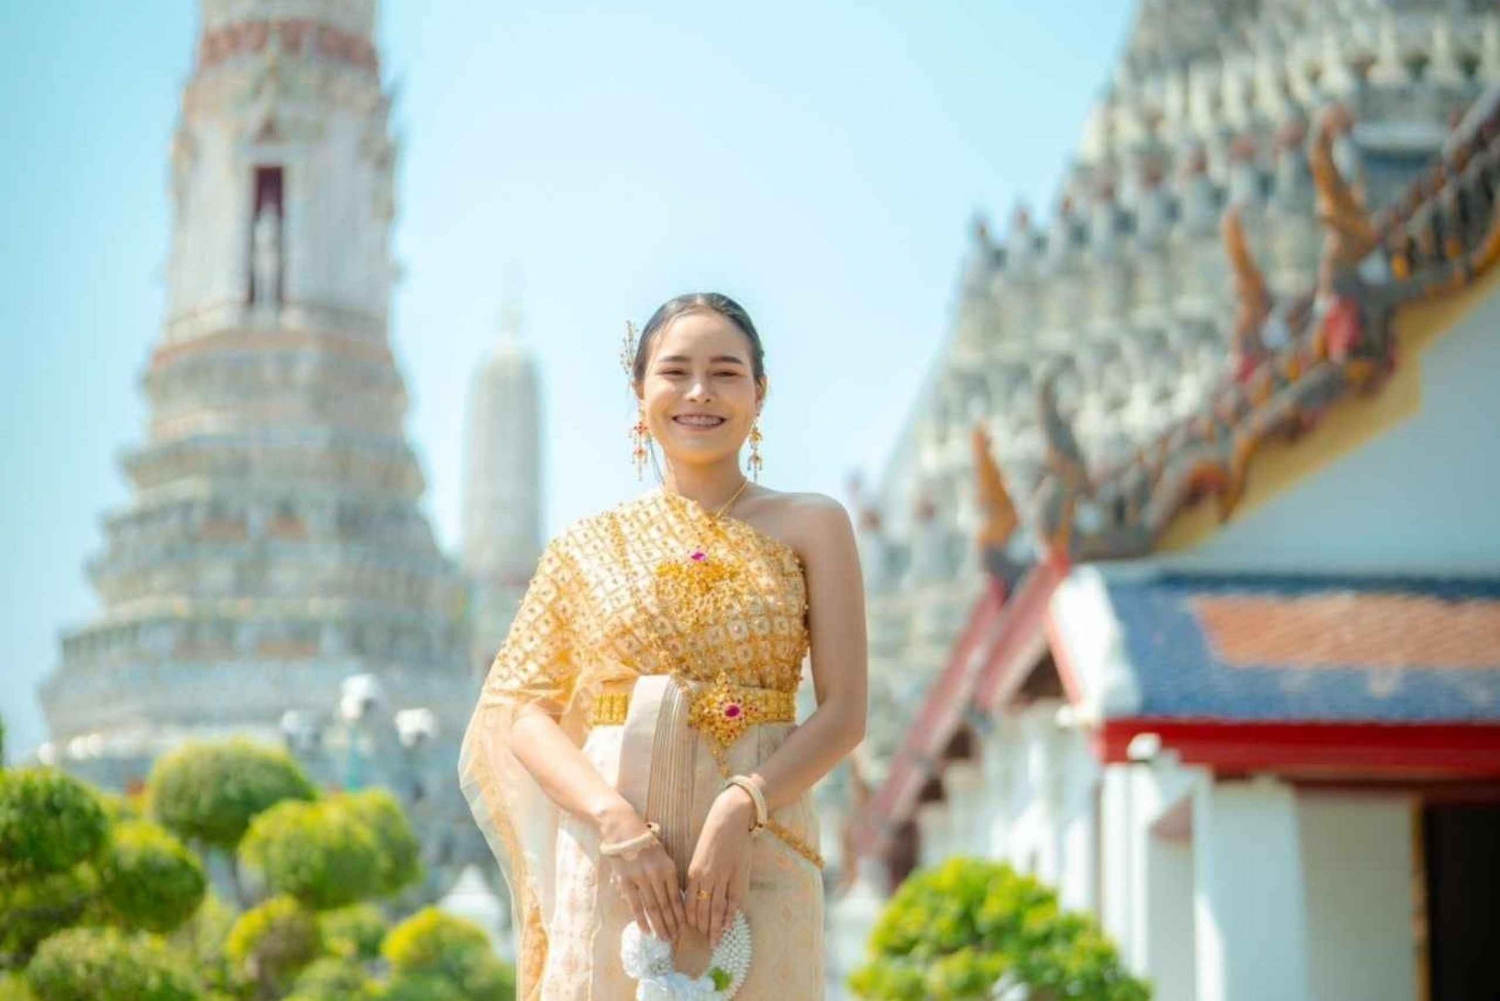 Udlejning af traditionelle thailandske kostumer og hårstyling ved Wat Arun